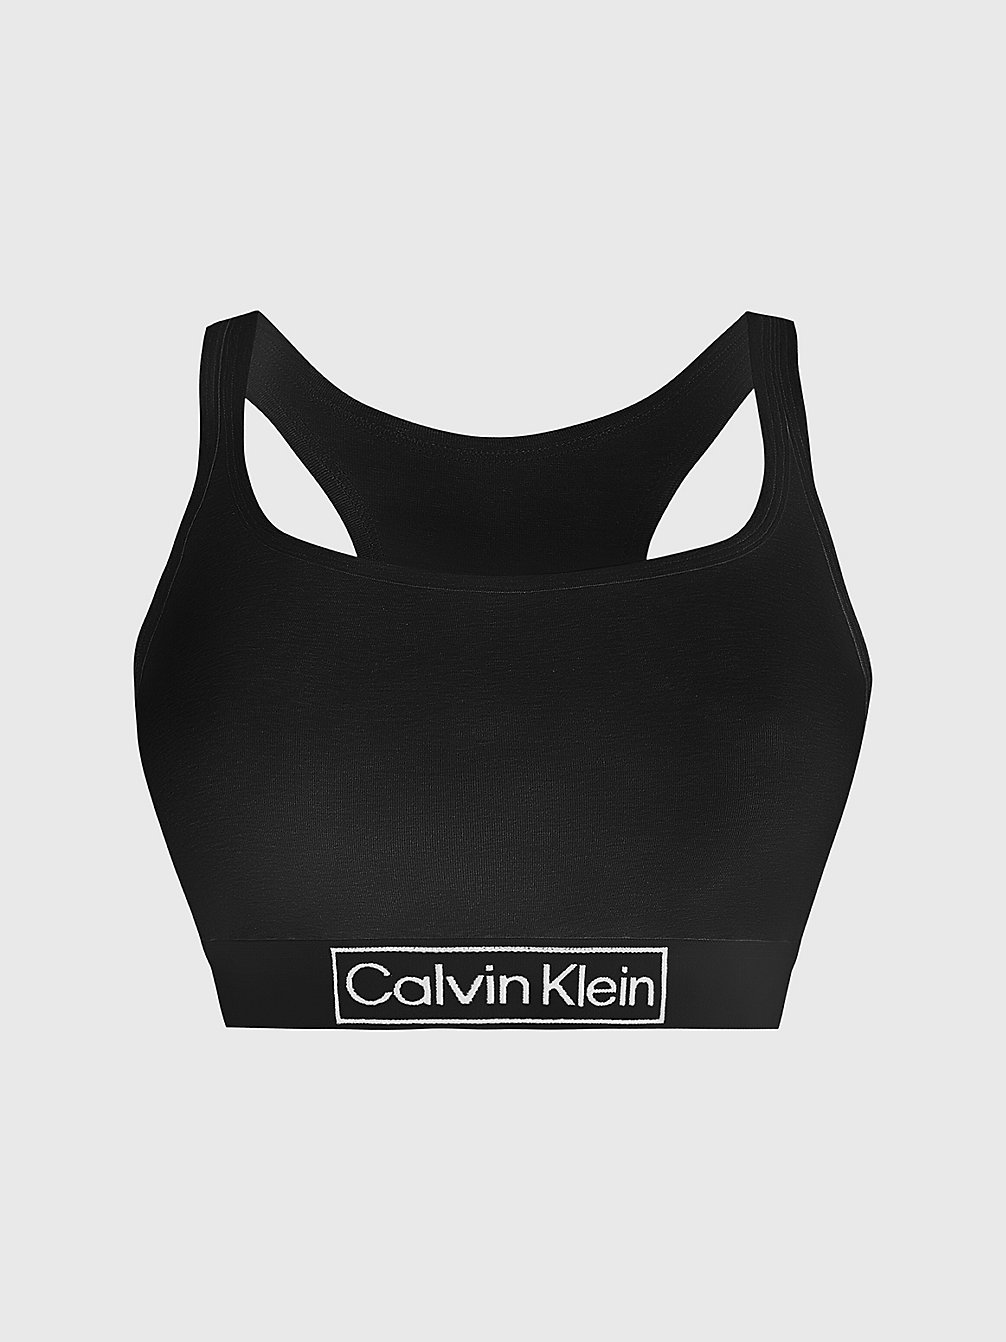 BLACK Bralette In Großen Größen - Reimagined Heritage undefined Damen Calvin Klein